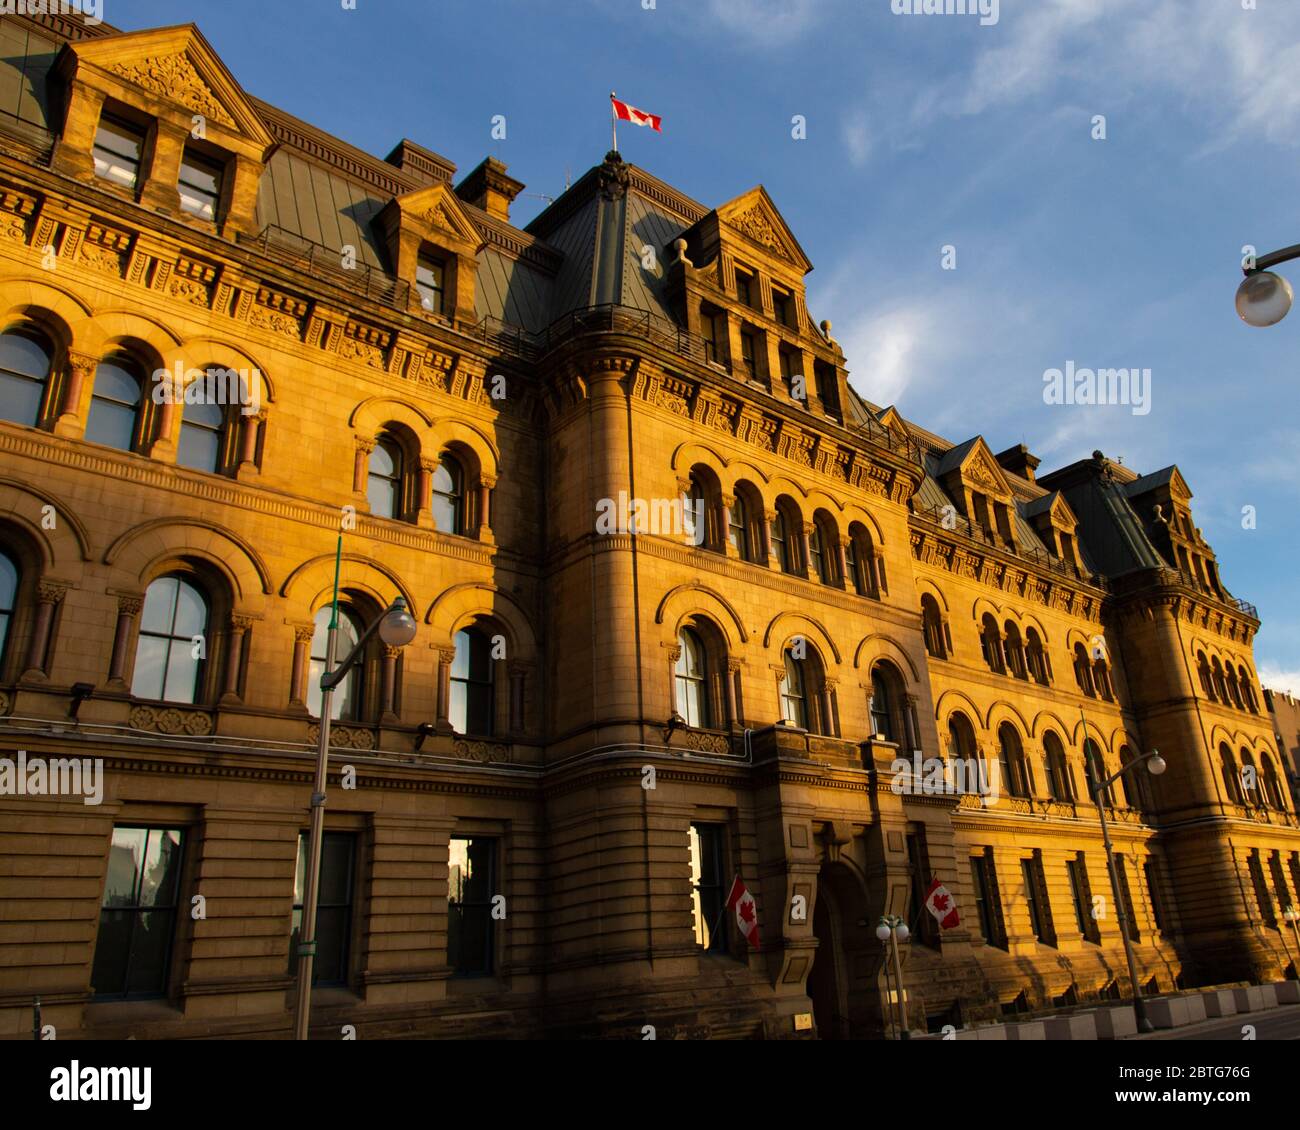 Das Büro des Premierministers und Privy Council Gebäude, das 1889 fertiggestellt wurde, in der Wellington Street 80 in Ottawa, Kanada. Stockfoto